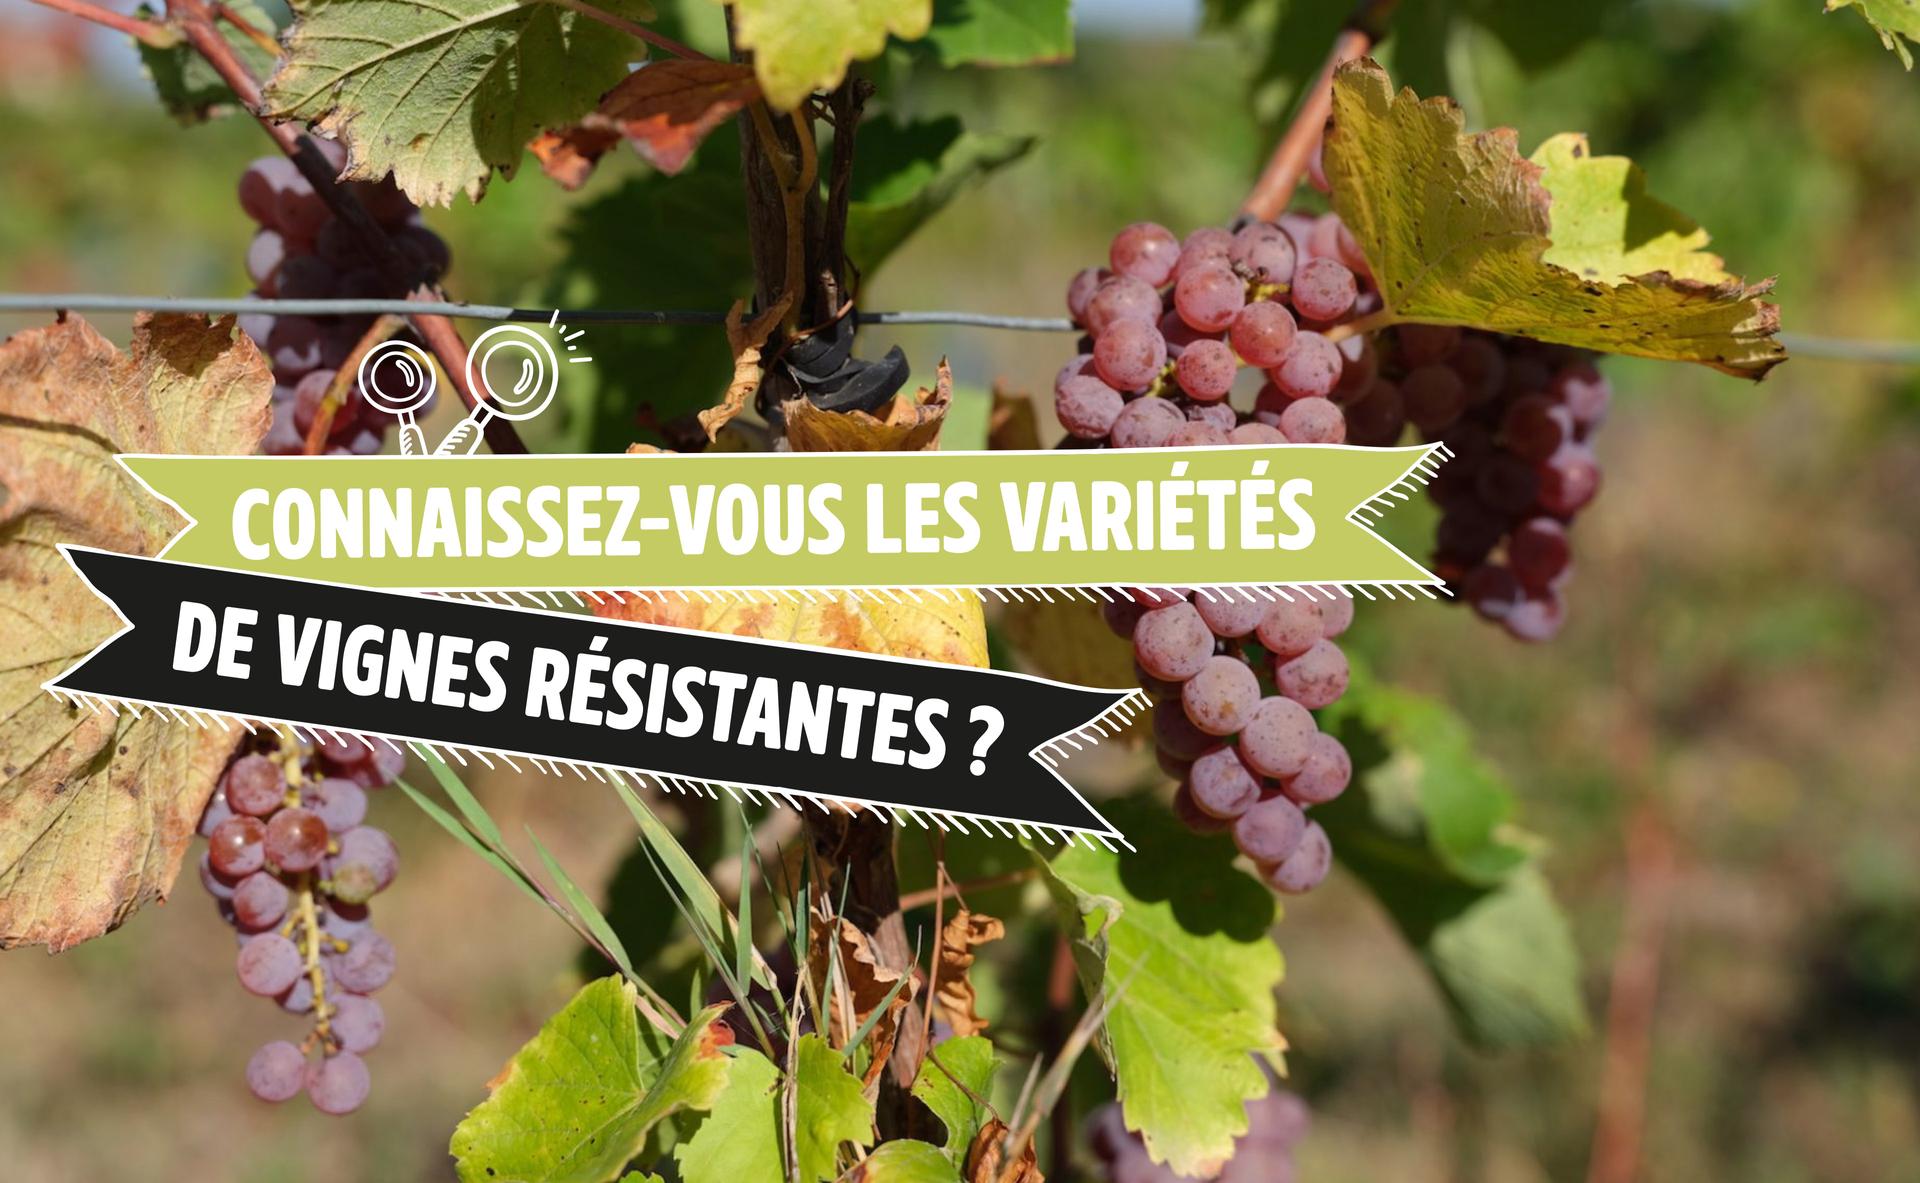 Connaissez-vous les variétés de vignes résistantes ?